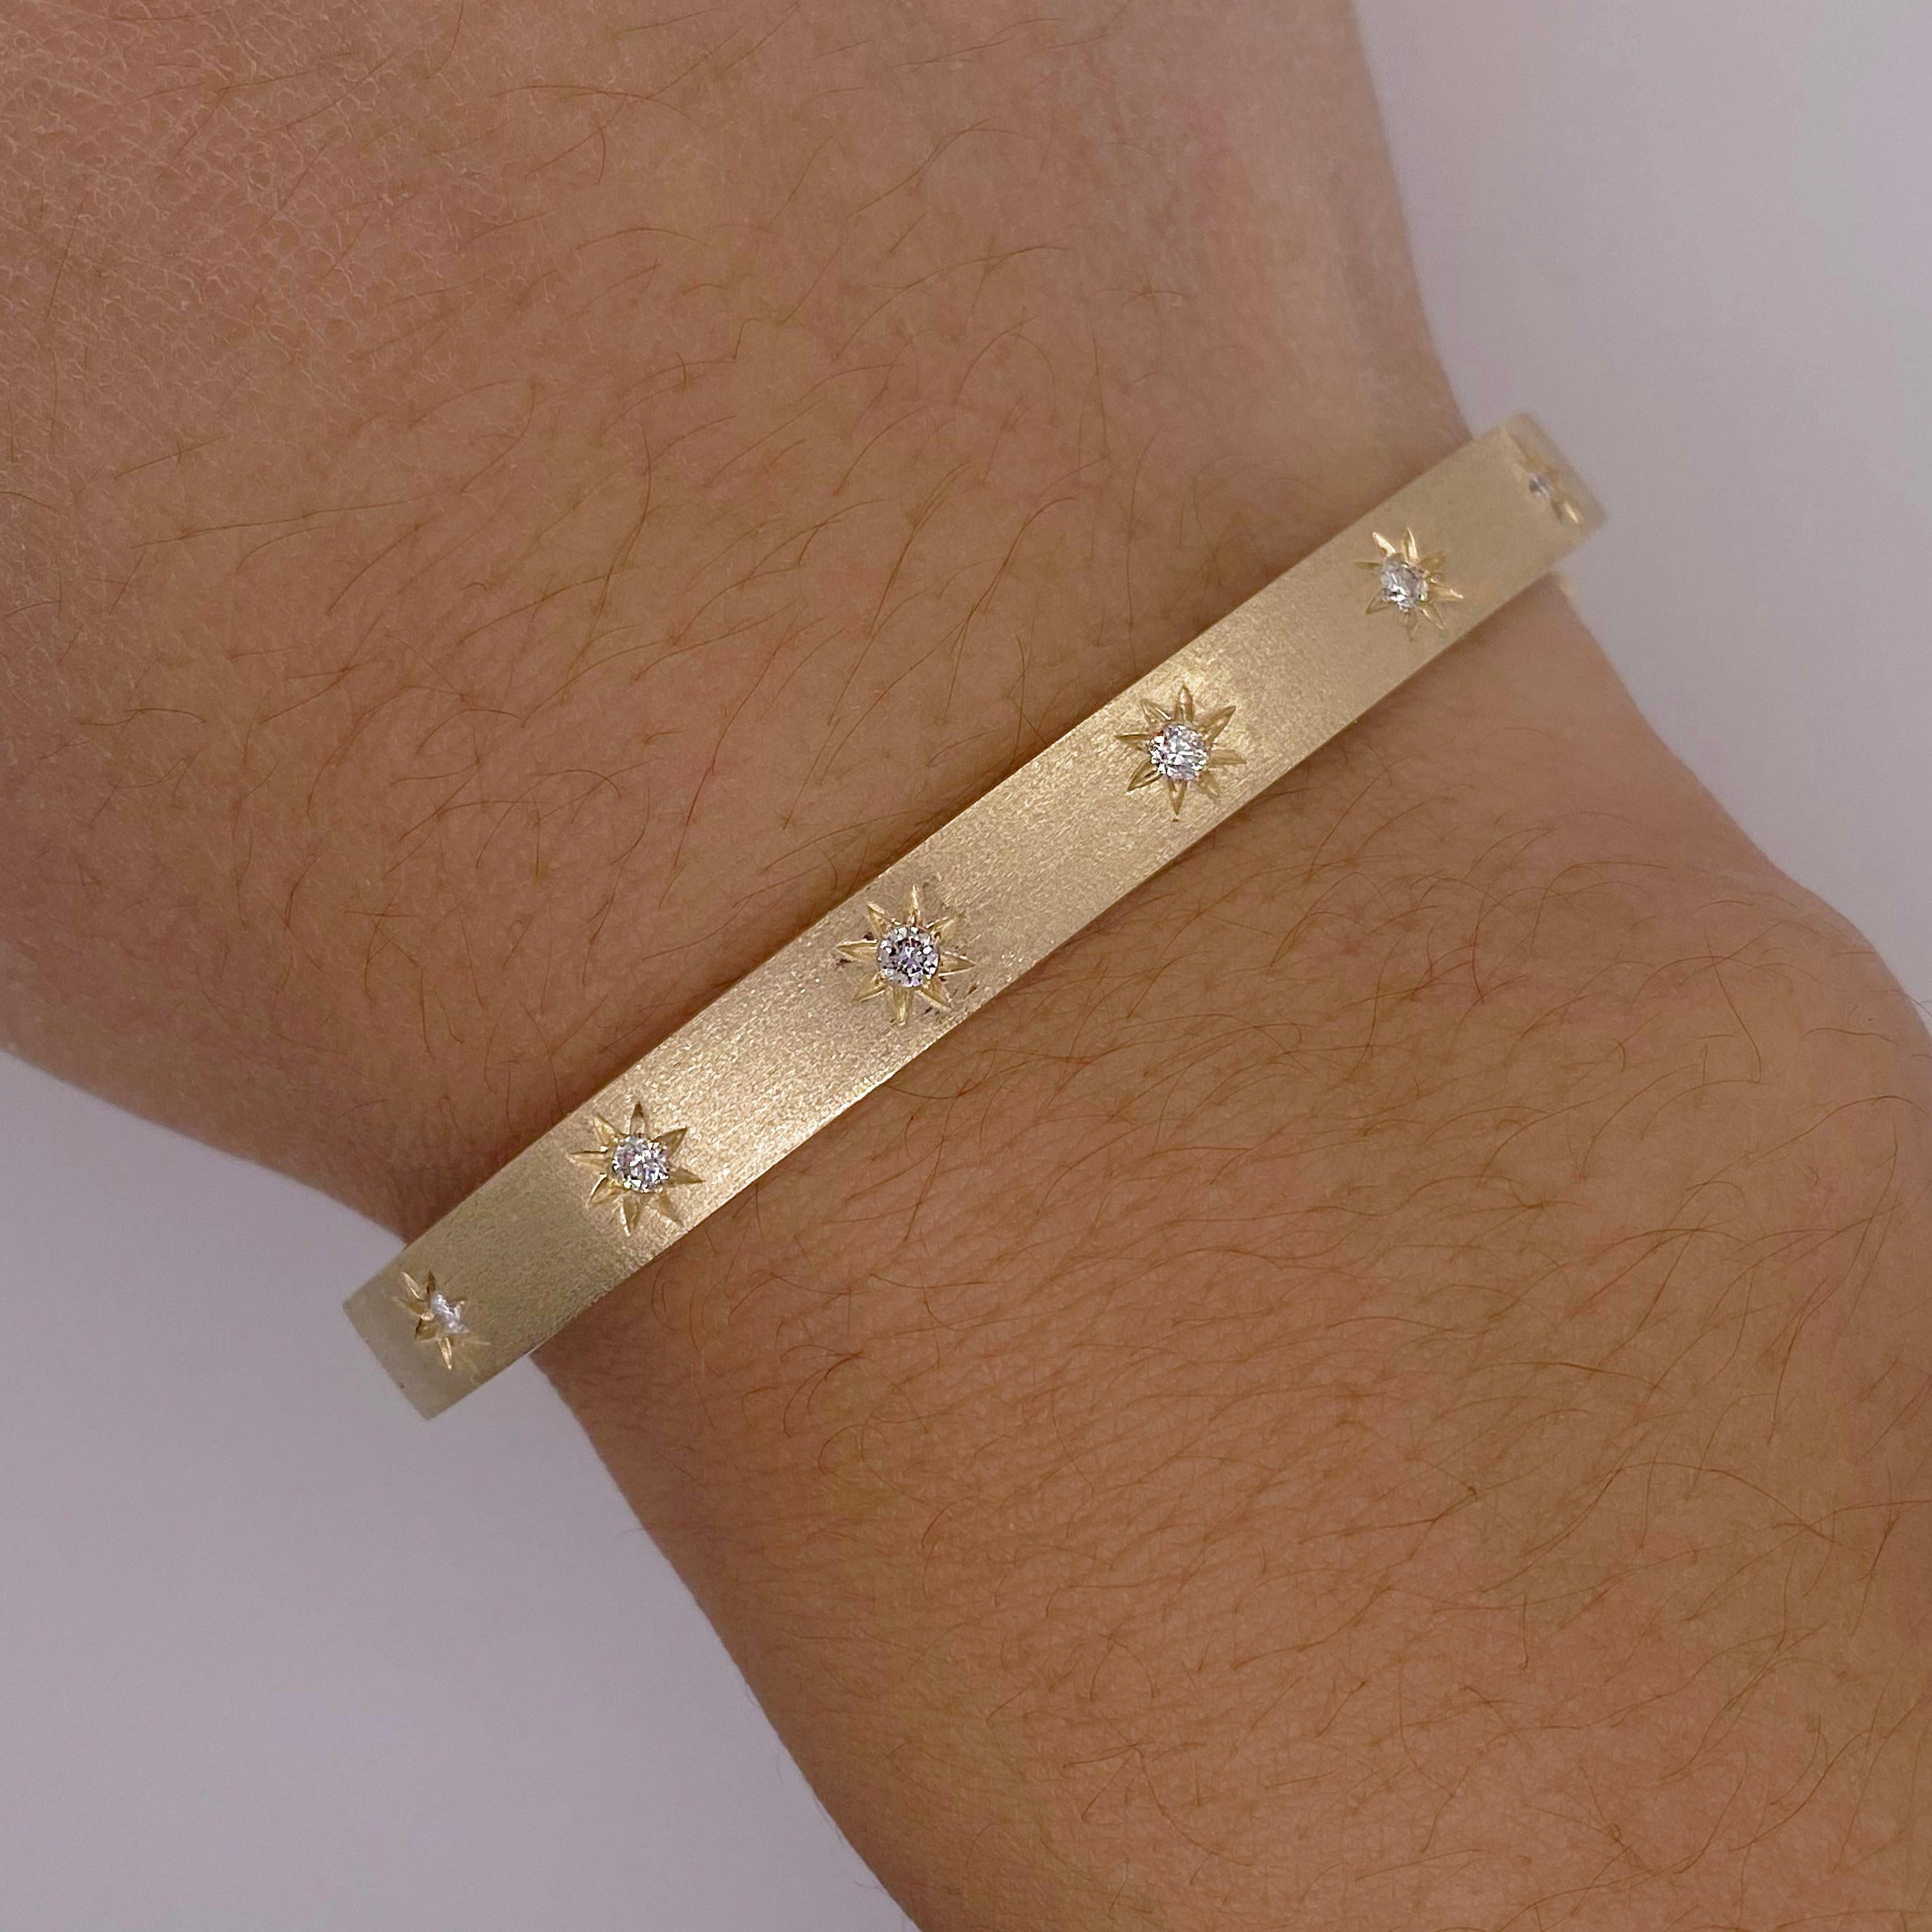 Ce bracelet étoilé est magnifique seul, avec d'autres bracelets ou à côté d'une montre. Il a été créé en or jaune 14 carats recyclé. Il est accompagné d'une bague assortie qui en fait un bel ensemble. Les diamants sont encastrés dans les étoiles